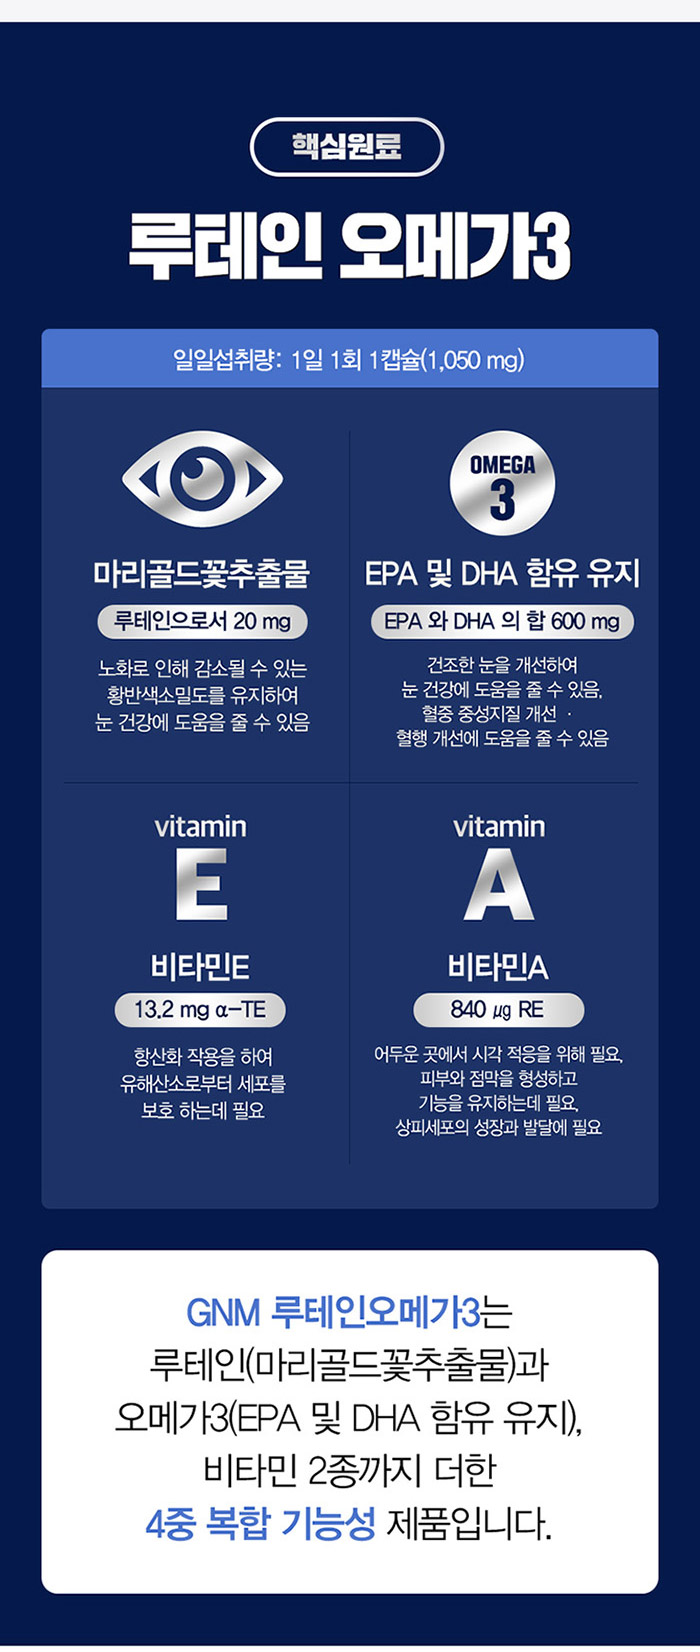 韓國食品-[GNM] Lutein Omega3 Gift Set (30 Capsules *6 Cases) [servings for 6 months]